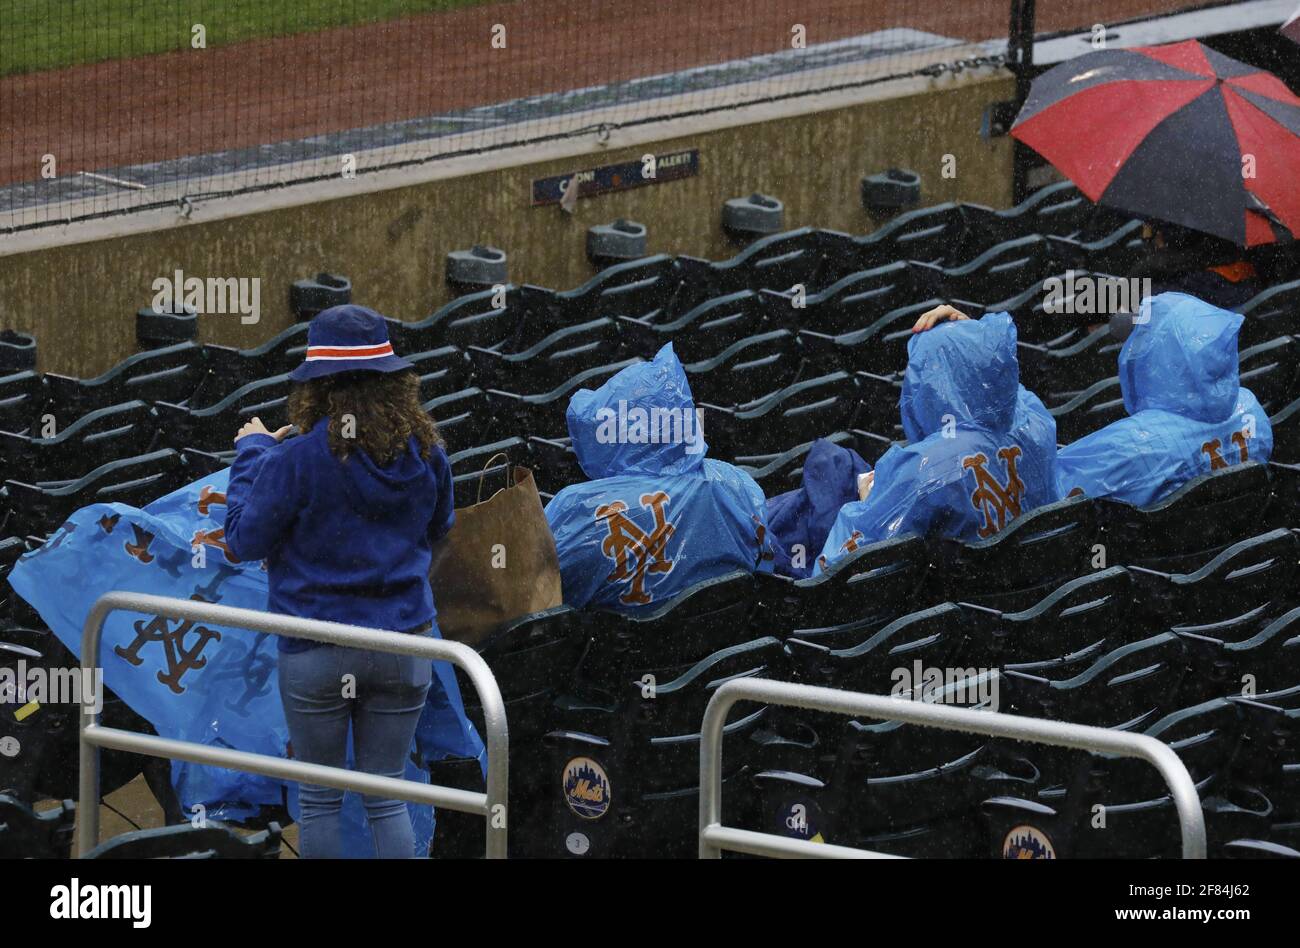 Queens, Estados Unidos. 11th de Abr de 2021. Los fans de los New York Mets se encubren en plástico cuando la lluvia cae en la primera entrada contra los Miami Marlins en Citi Field el domingo, 11 de abril de 2021 en la ciudad de Nueva York. Foto de Peter Foley/UPI Crédito: UPI/Alamy Live News Foto de stock